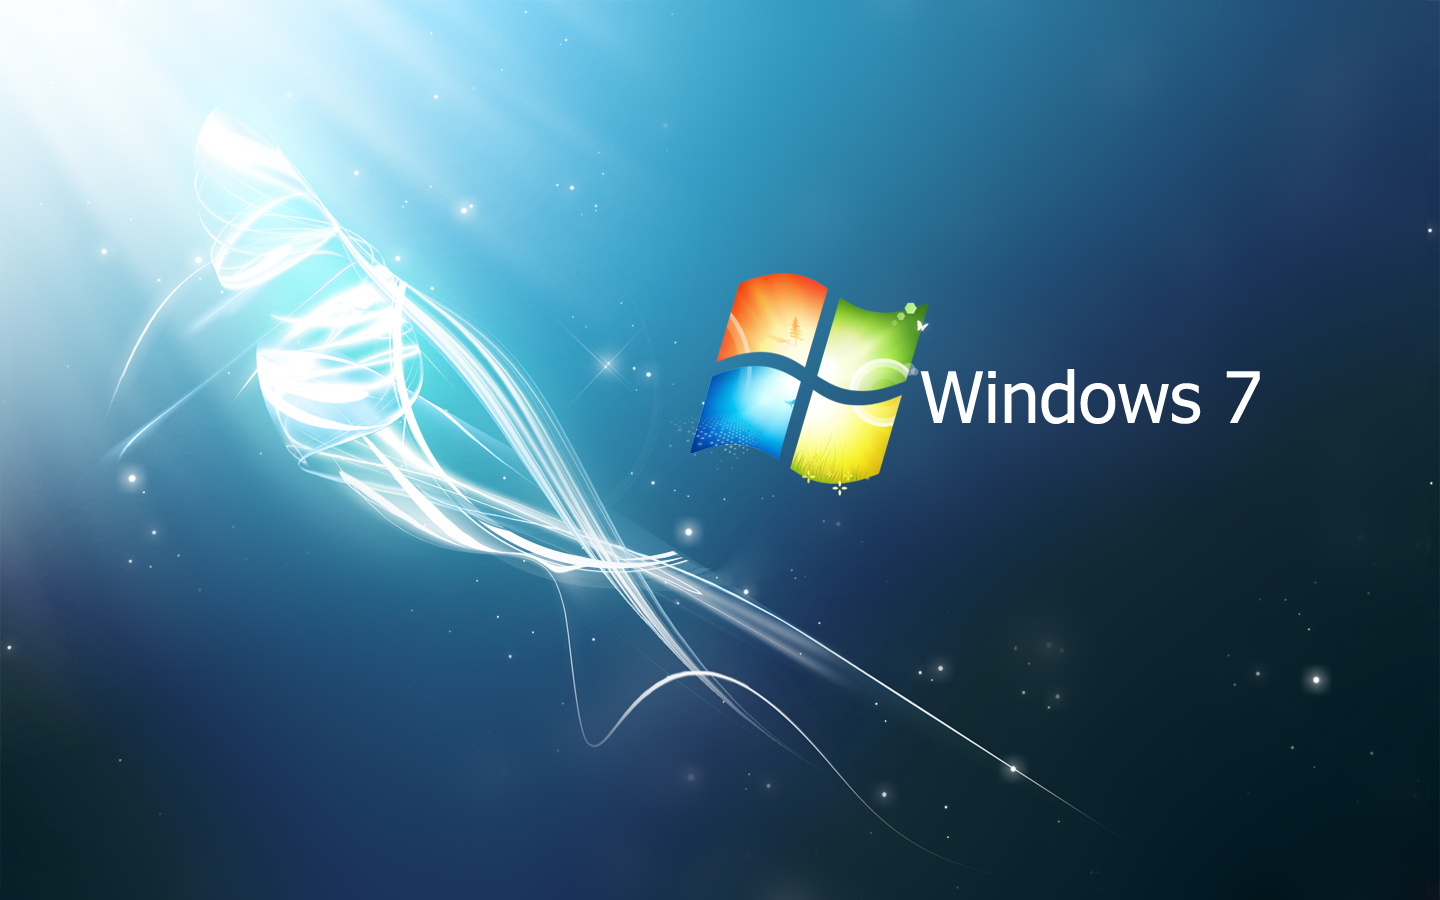 Windows 7 Blue Hd Wallpaper | Zoom Wallpapers